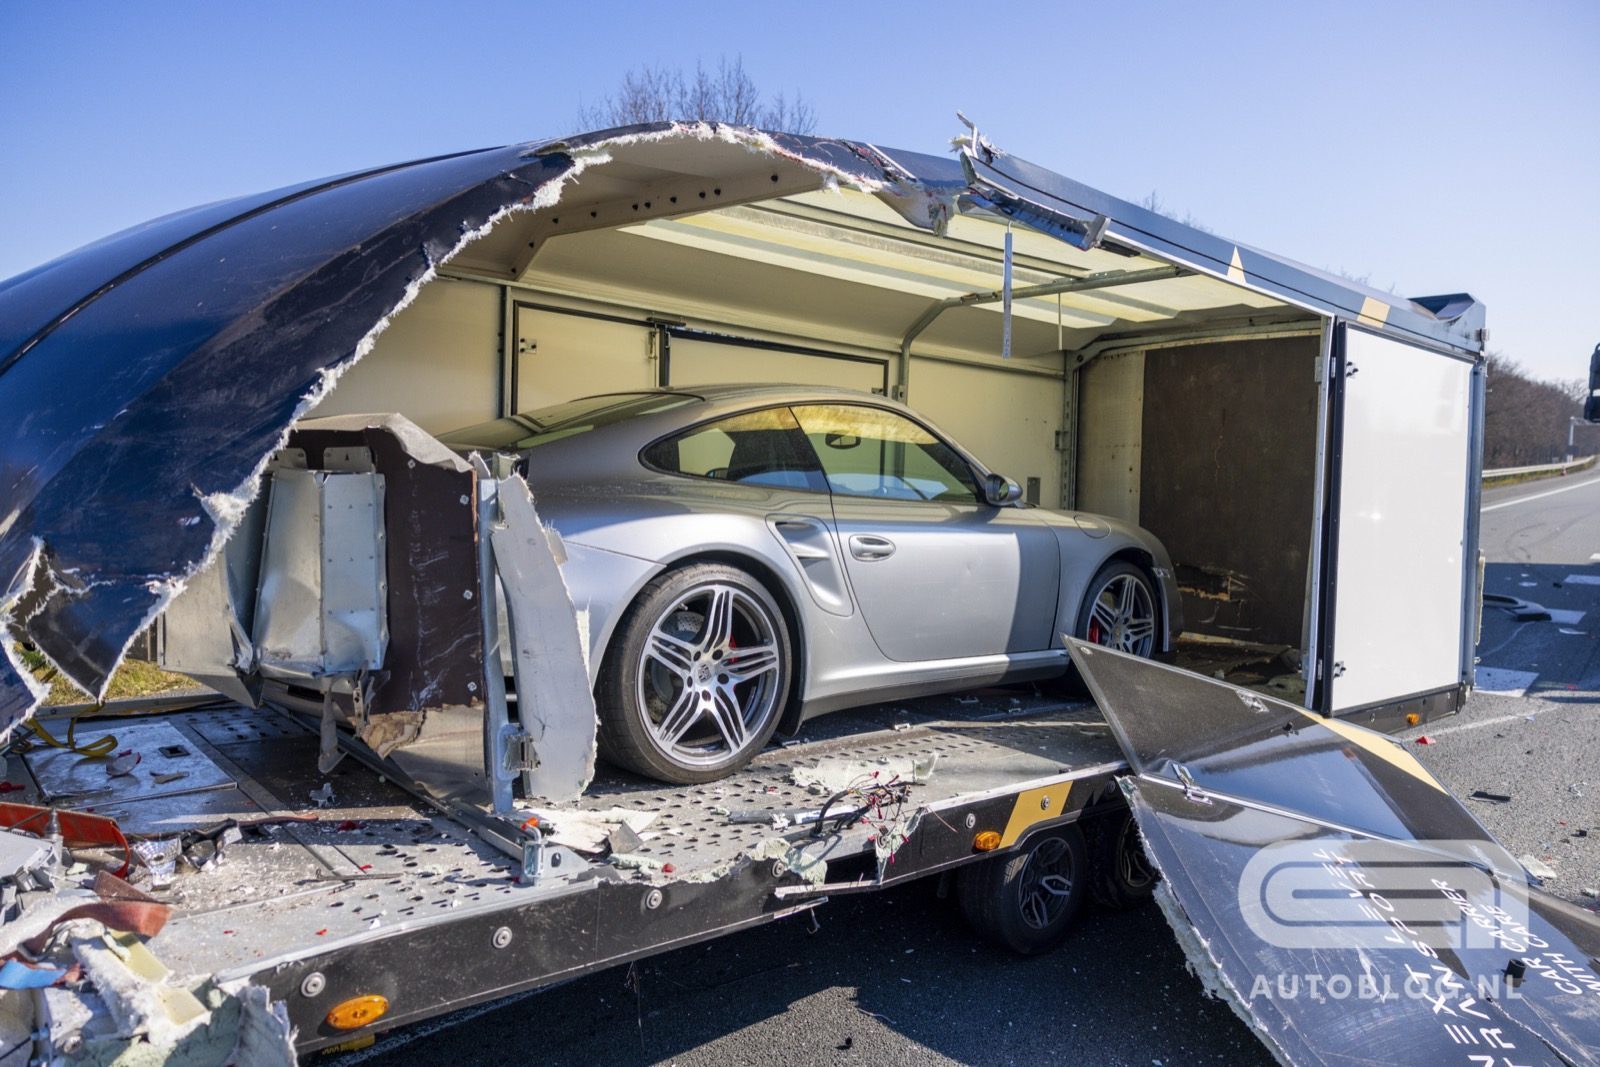 Porsche in 911 transporttrailer